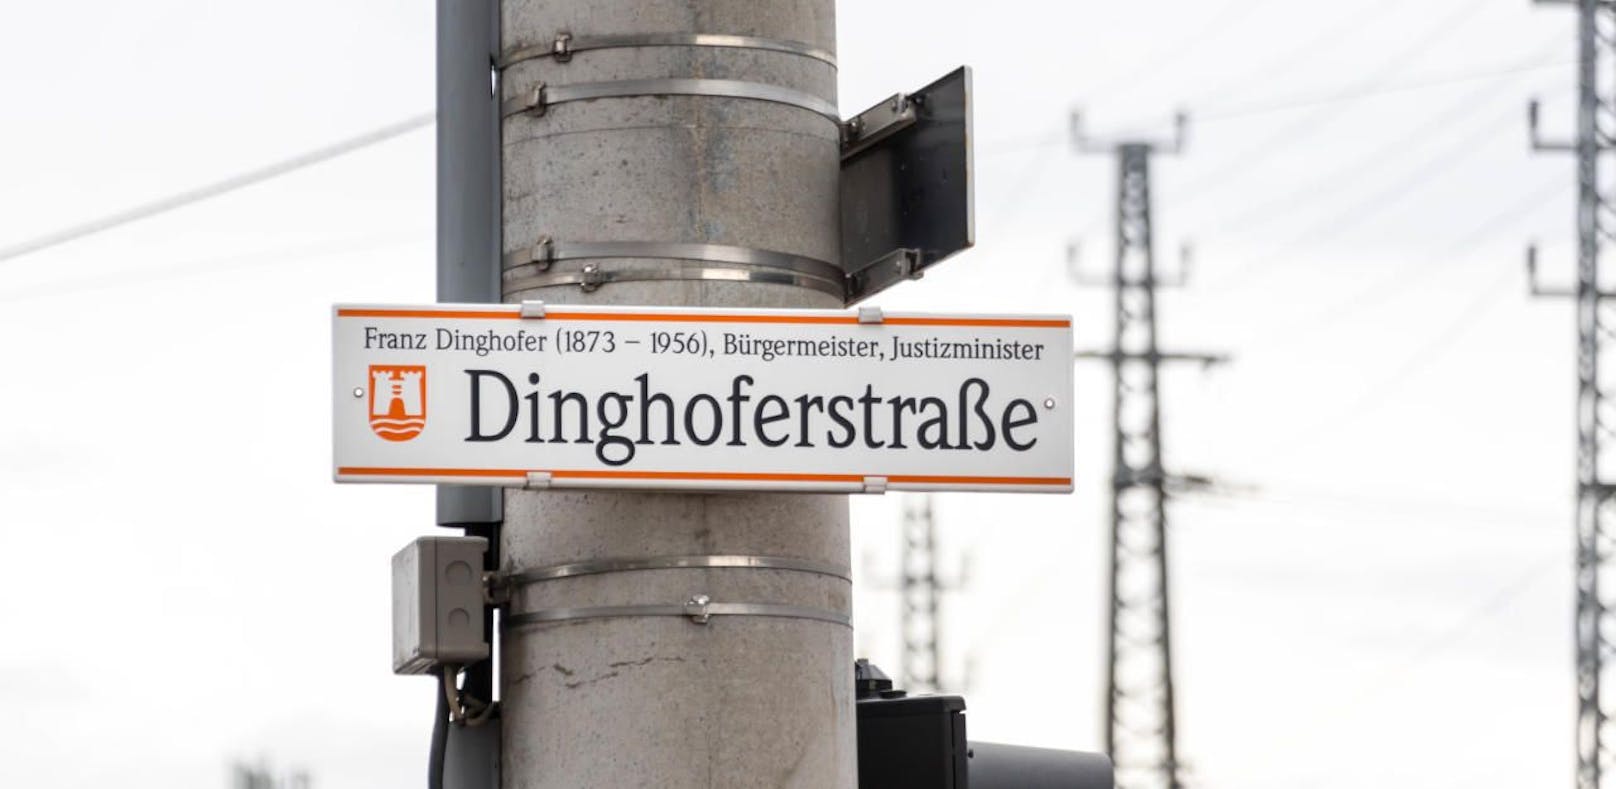 Nachdem bekannt wurde, dass Franz Dinghofer NSDAP-Mitglied war, wird diskutiert, ob die Straße umbenannt werden soll.